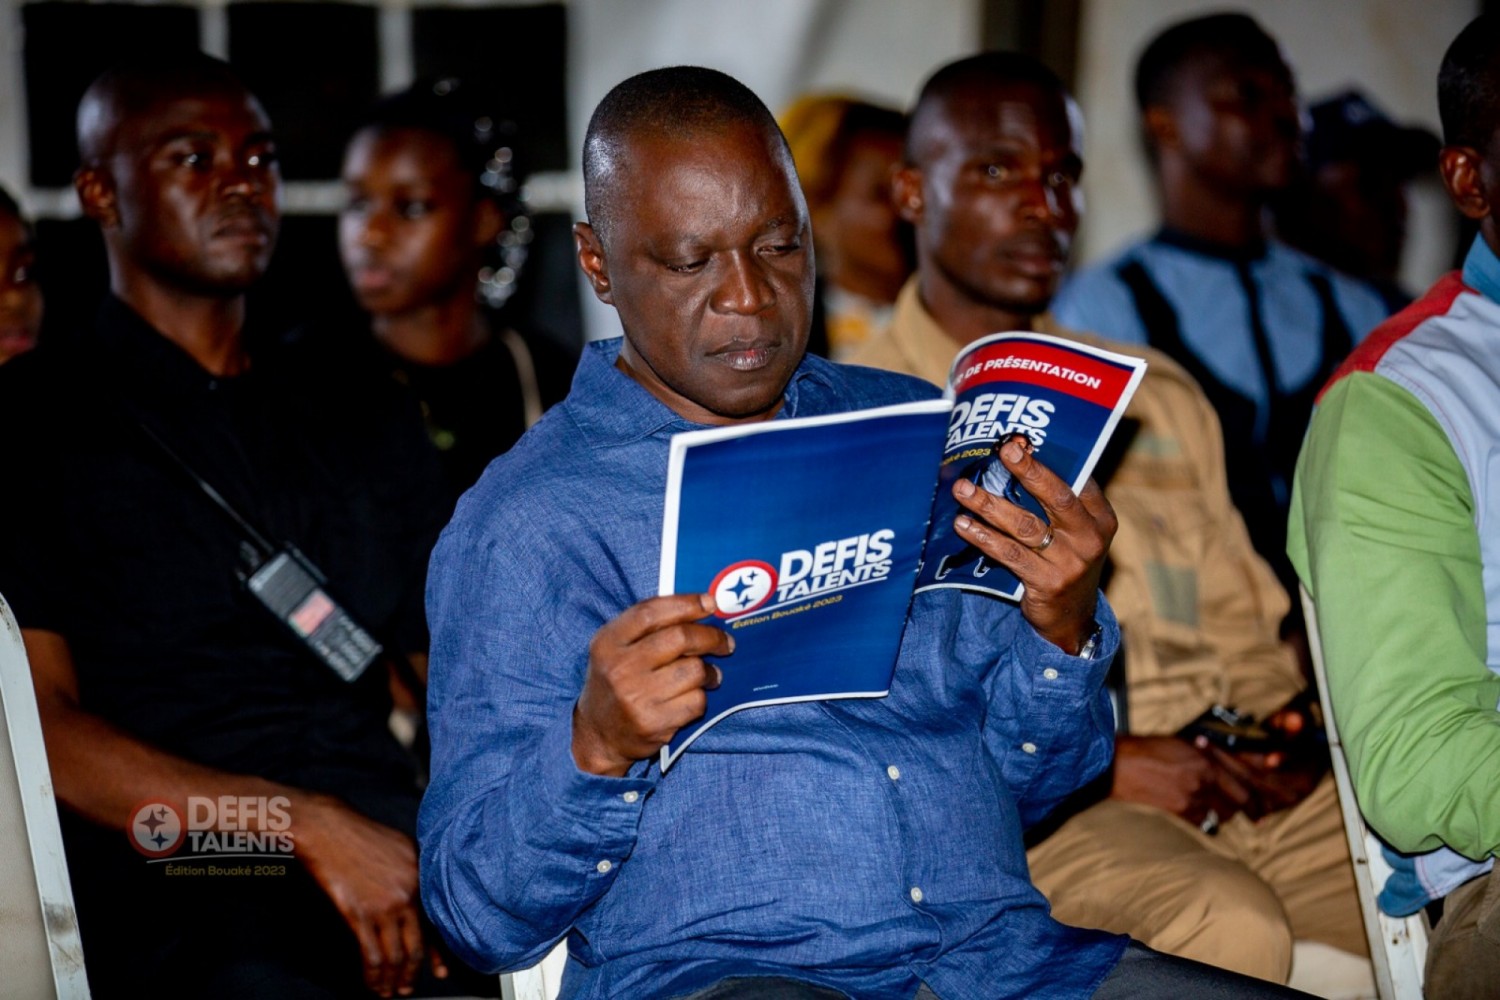 Côte d'Ivoire : Bouaké, Amadou Koné soutient « Défis talents » l'initiative d'une régie événementielle